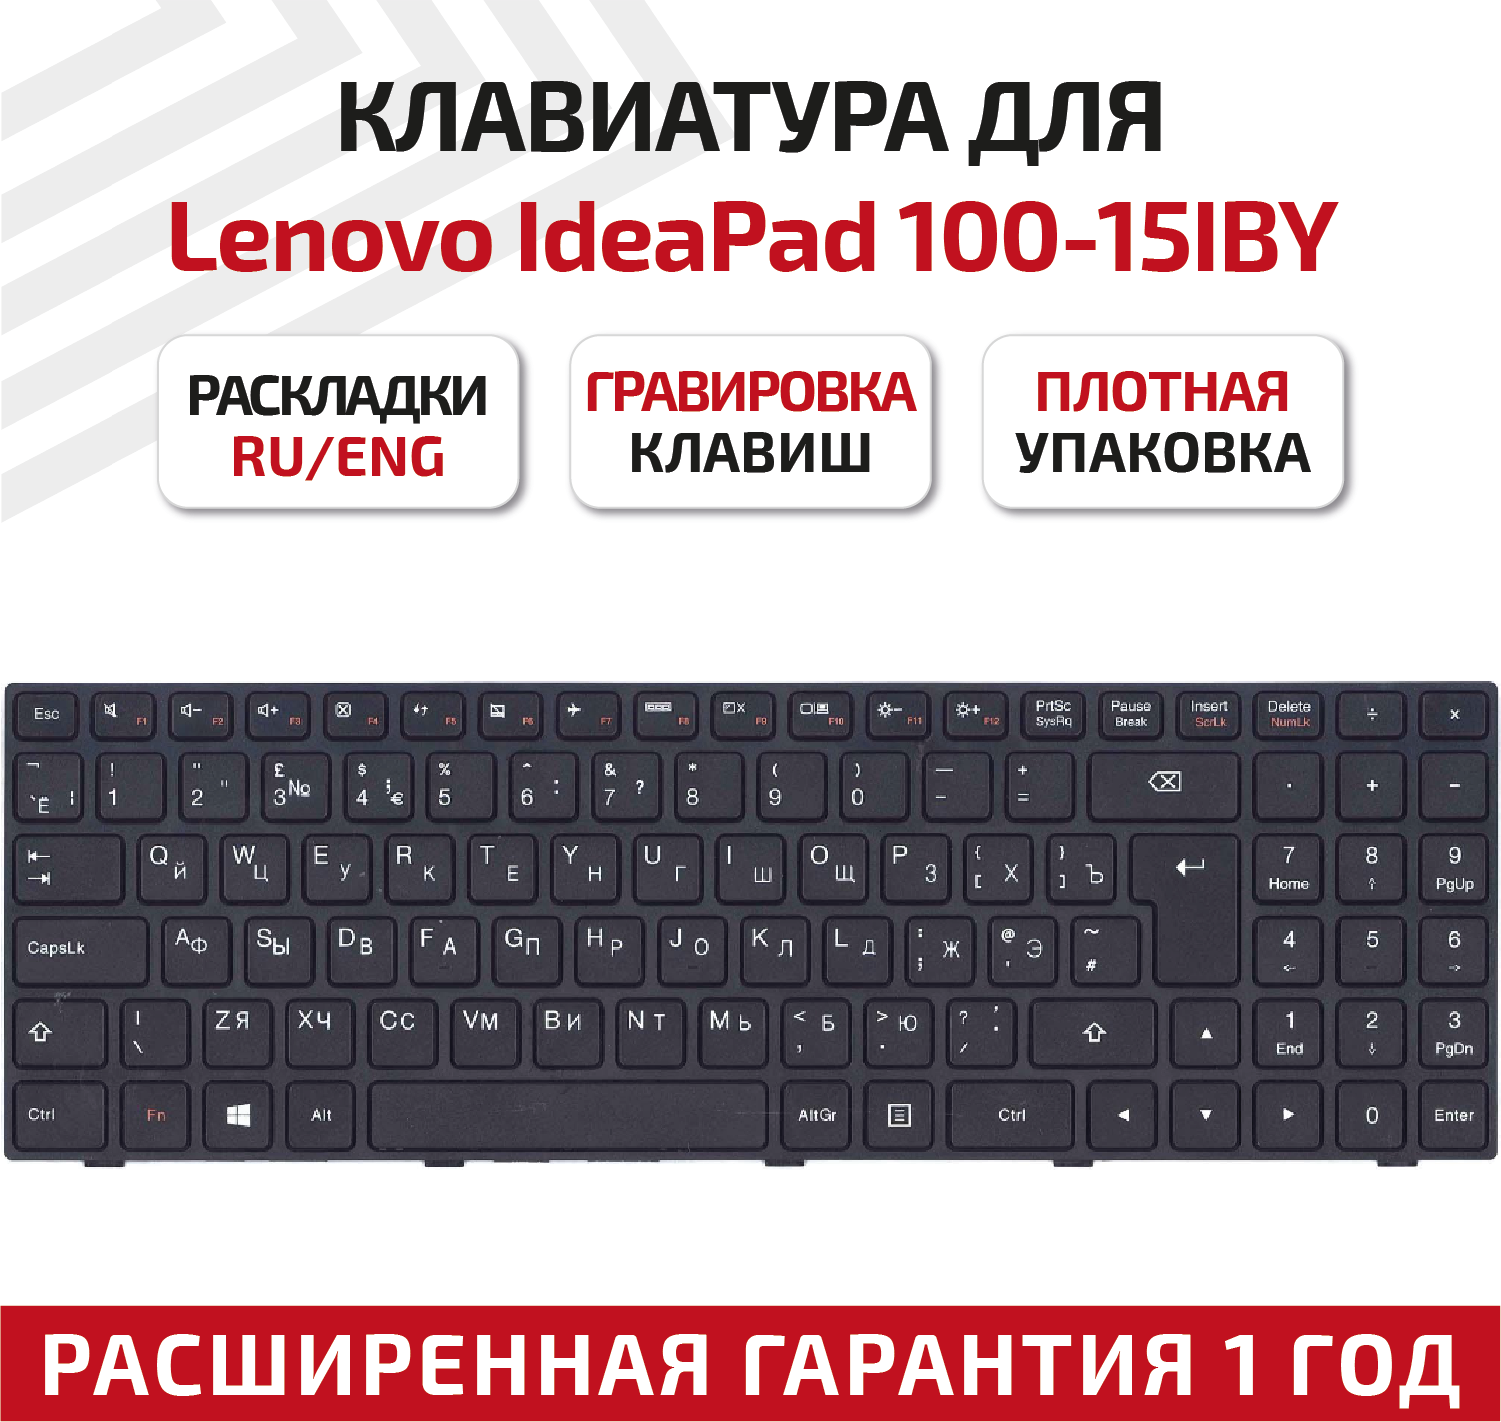 Клавиатура (keyboard) SN20J78609 для ноутбука Lenovo IdeaPad 100-15, 100-15IBY, 100-15IB, B50-10, B5010, черная